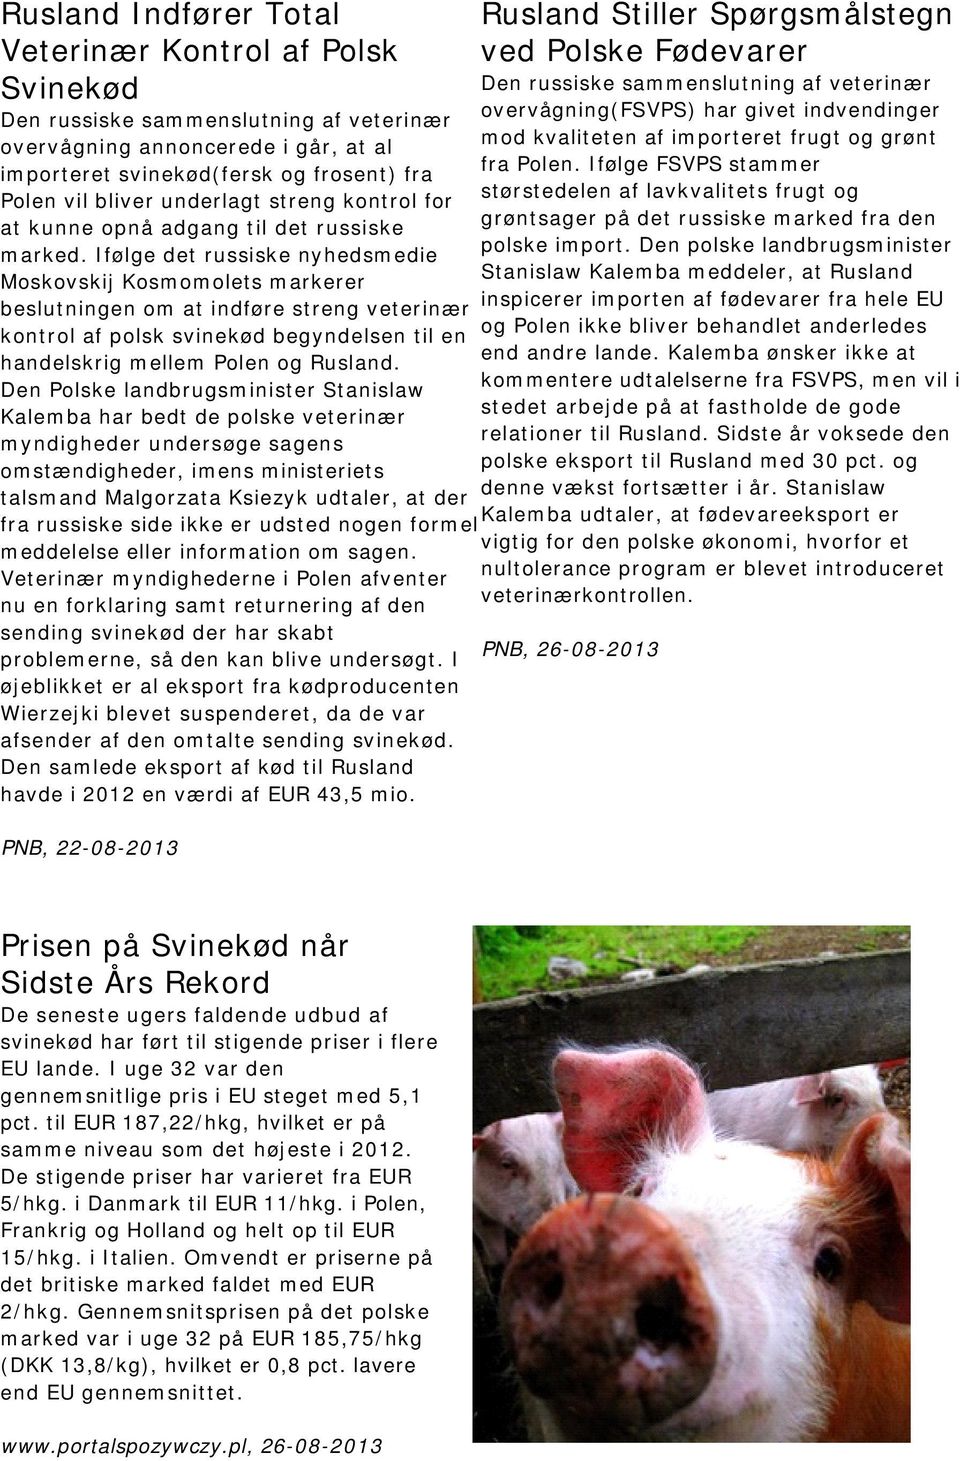 Ifølge det russiske nyhedsmedie Moskovskij Kosmomolets markerer beslutningen om at indføre streng veterinær kontrol af polsk svinekød begyndelsen til en handelskrig mellem Polen og Rusland.